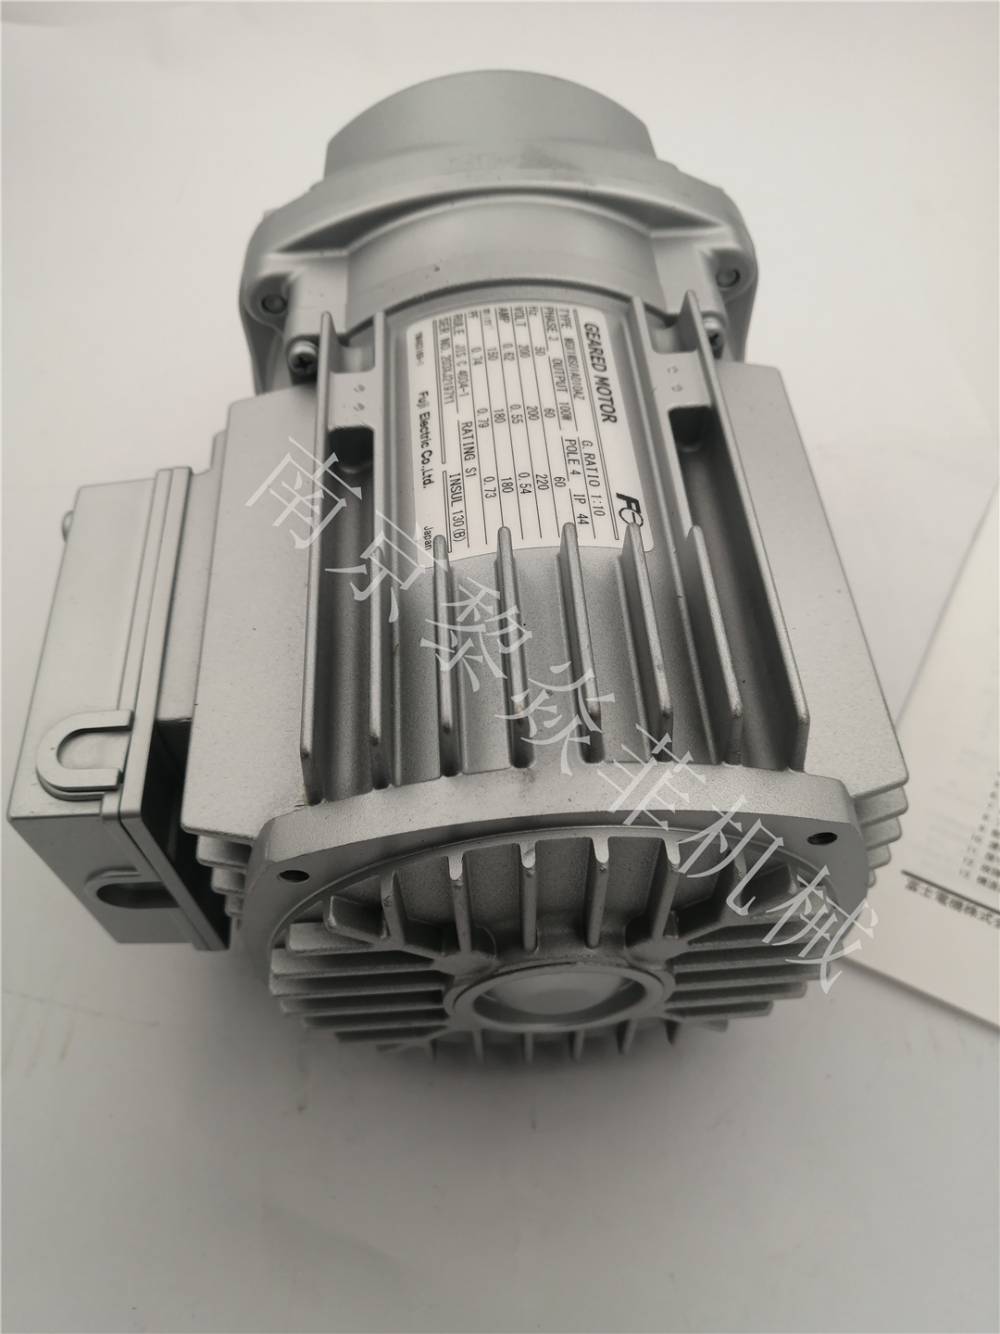 富士fuji電機 MGX1MB01W080AS-SS 微型电机 天津报价